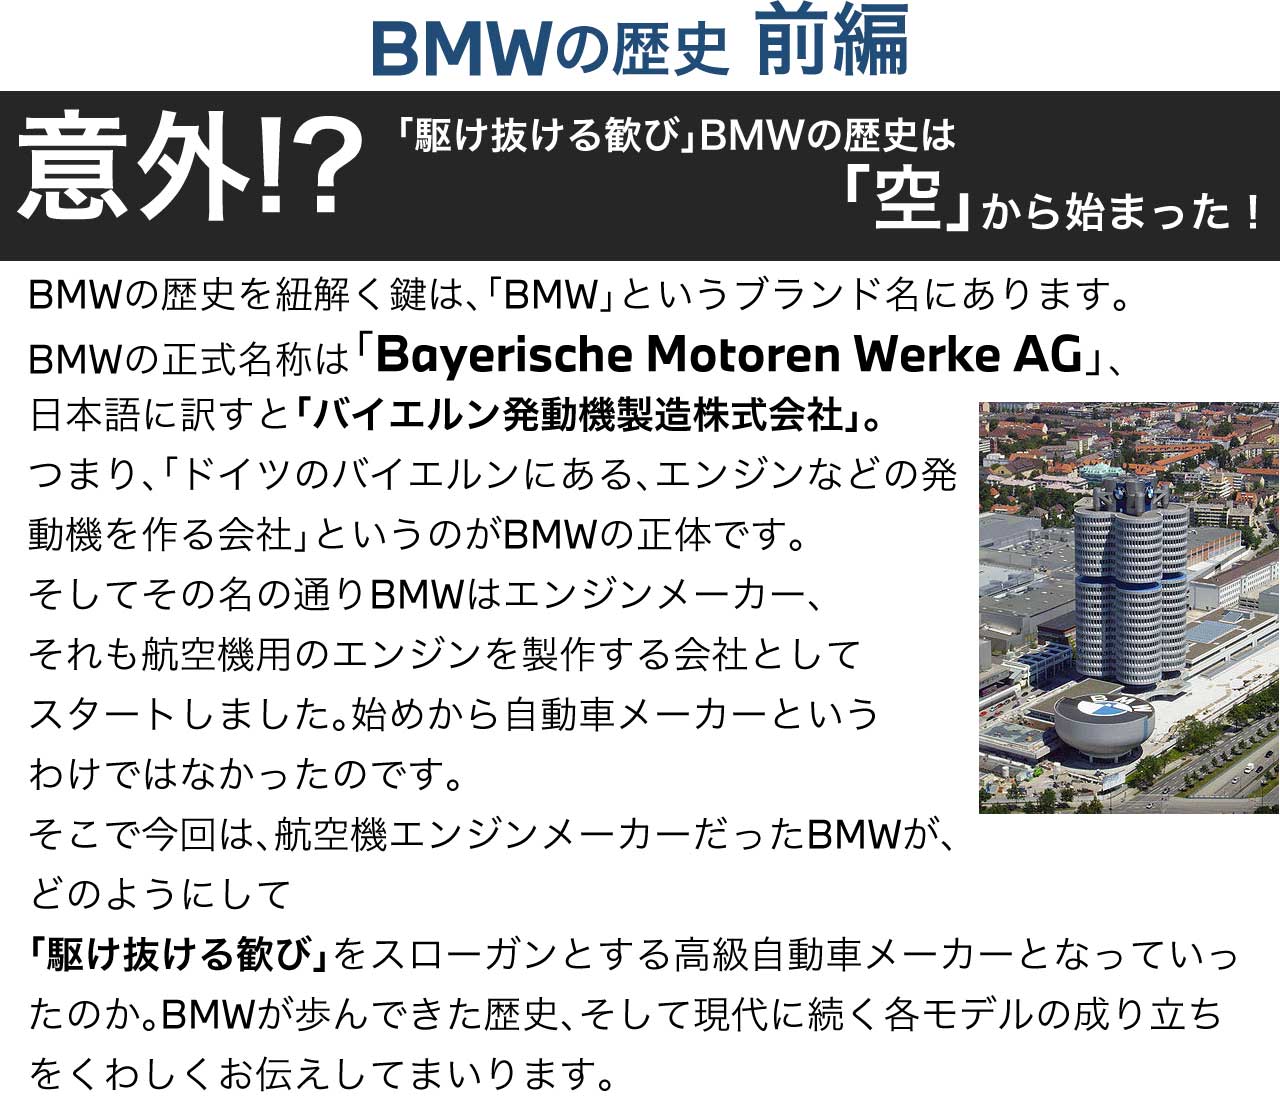 BMWの歴史　意外？！「駆けぬける歓び」BMWの歴史は「空」から始まった！ BMWの歴史を紐解く鍵は、「BMW」というブランド名にあります。BMWの正式名称は「Bayerische Motoren Werke AG」、日本語に訳すと「バイエルン発動機製造株式会社」。つまり、「ドイツのバイエルンにある、エンジンなどの発動機を作る会社」というのがBMWの正体です。そしてその名の通りBMWはエンジンメーカー、それも航空機用のエンジンを製作する会社としてスタートしました。始めから自動車メーカーというわけではなかったのです。そこで今回は、航空機エンジンメーカーだったBMWが、どのようにして「駆けぬける歓び」をスローガンとする高級自動車メーカーとなっていったのか。BMWが歩んできた歴史、そして現代に続く各モデルの成り立ちをくわしくお伝えしてまいります。